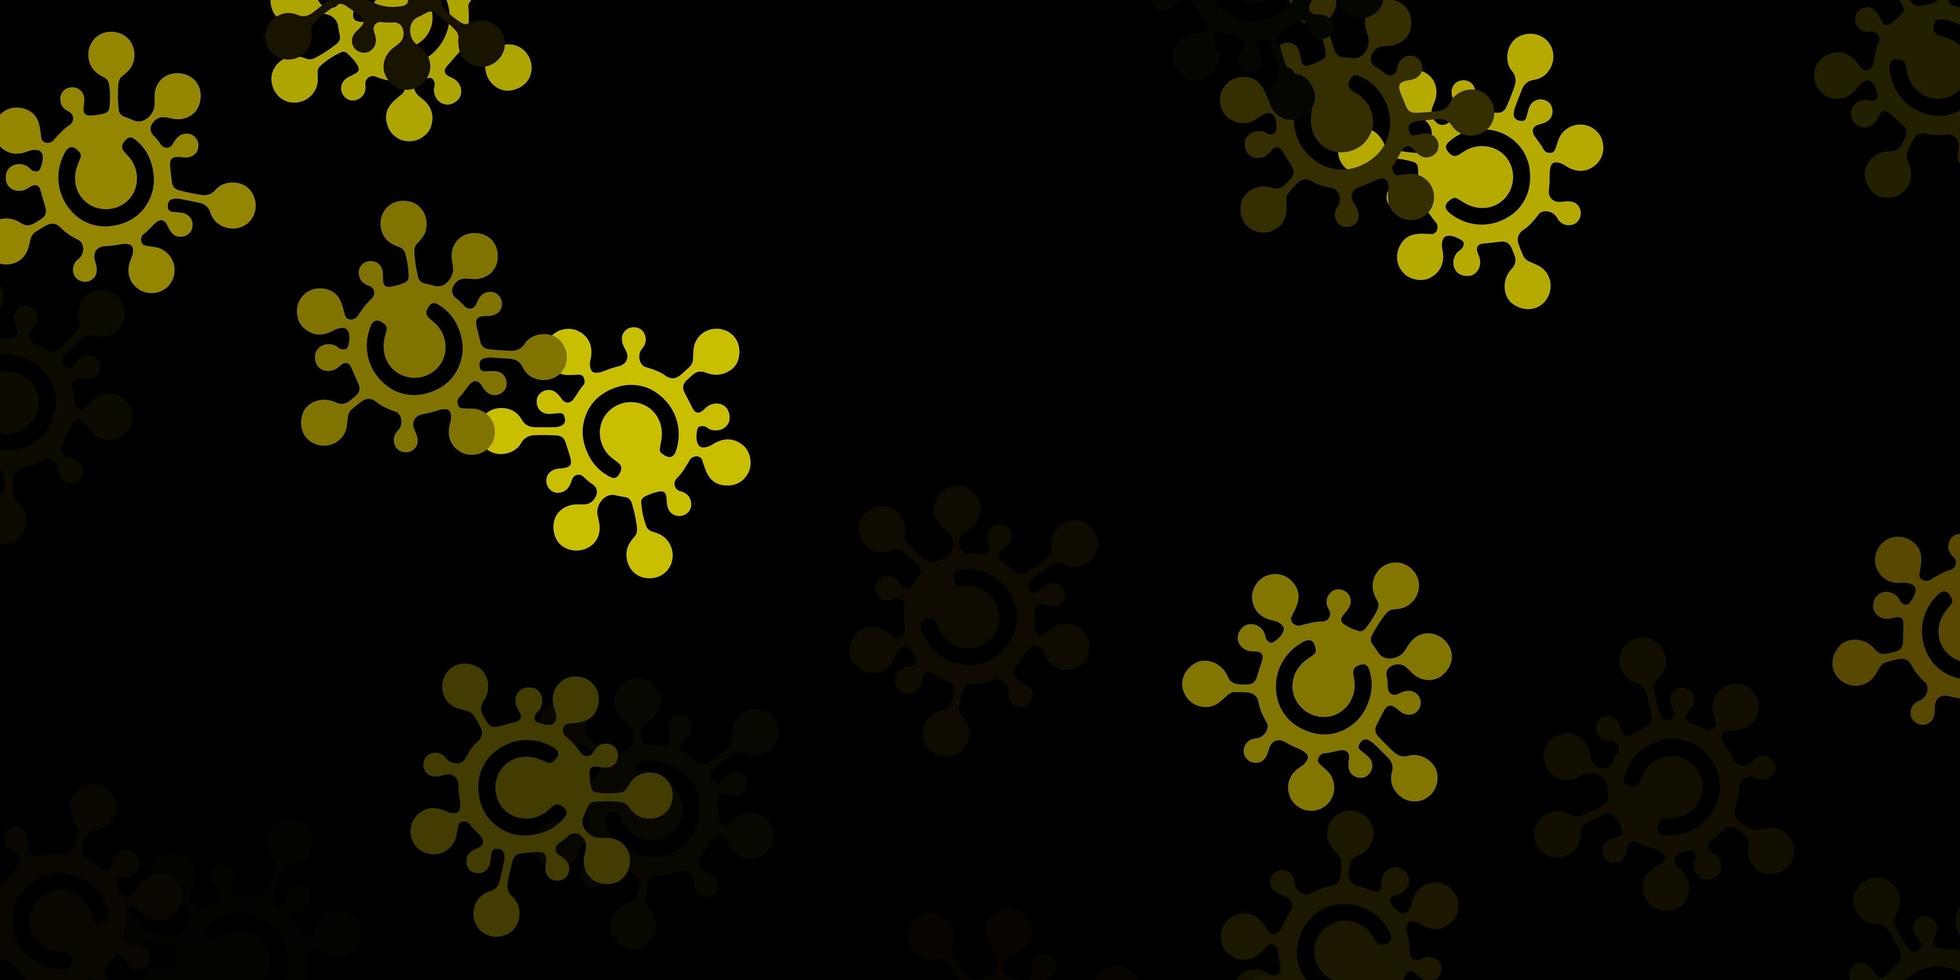 textura de vetor verde e amarelo escuro com símbolos de doença.